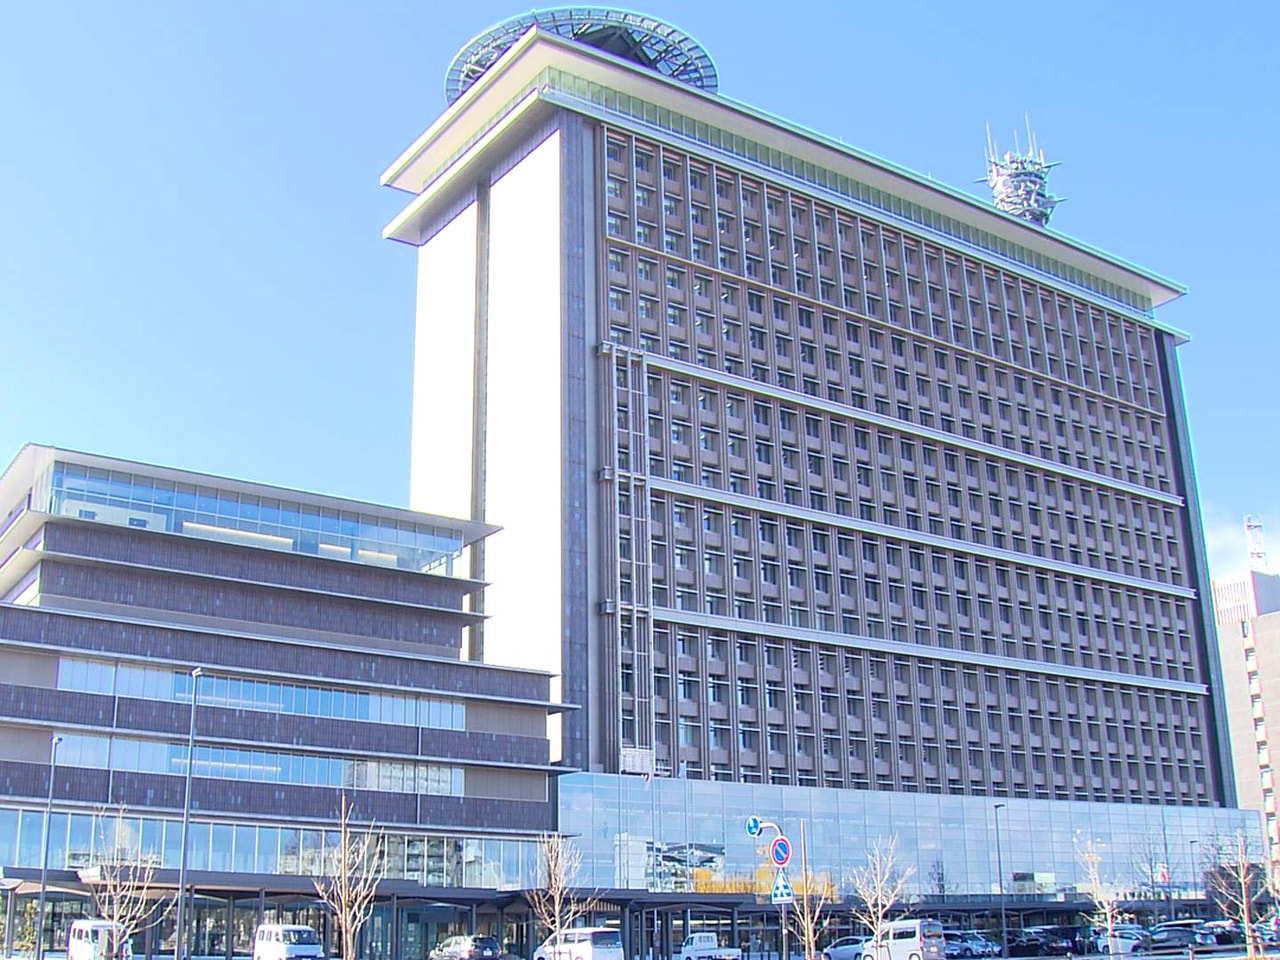 岐阜県教育委員会は１０日、大垣商業高校で実施した入学試験について、試験官の誤りで...